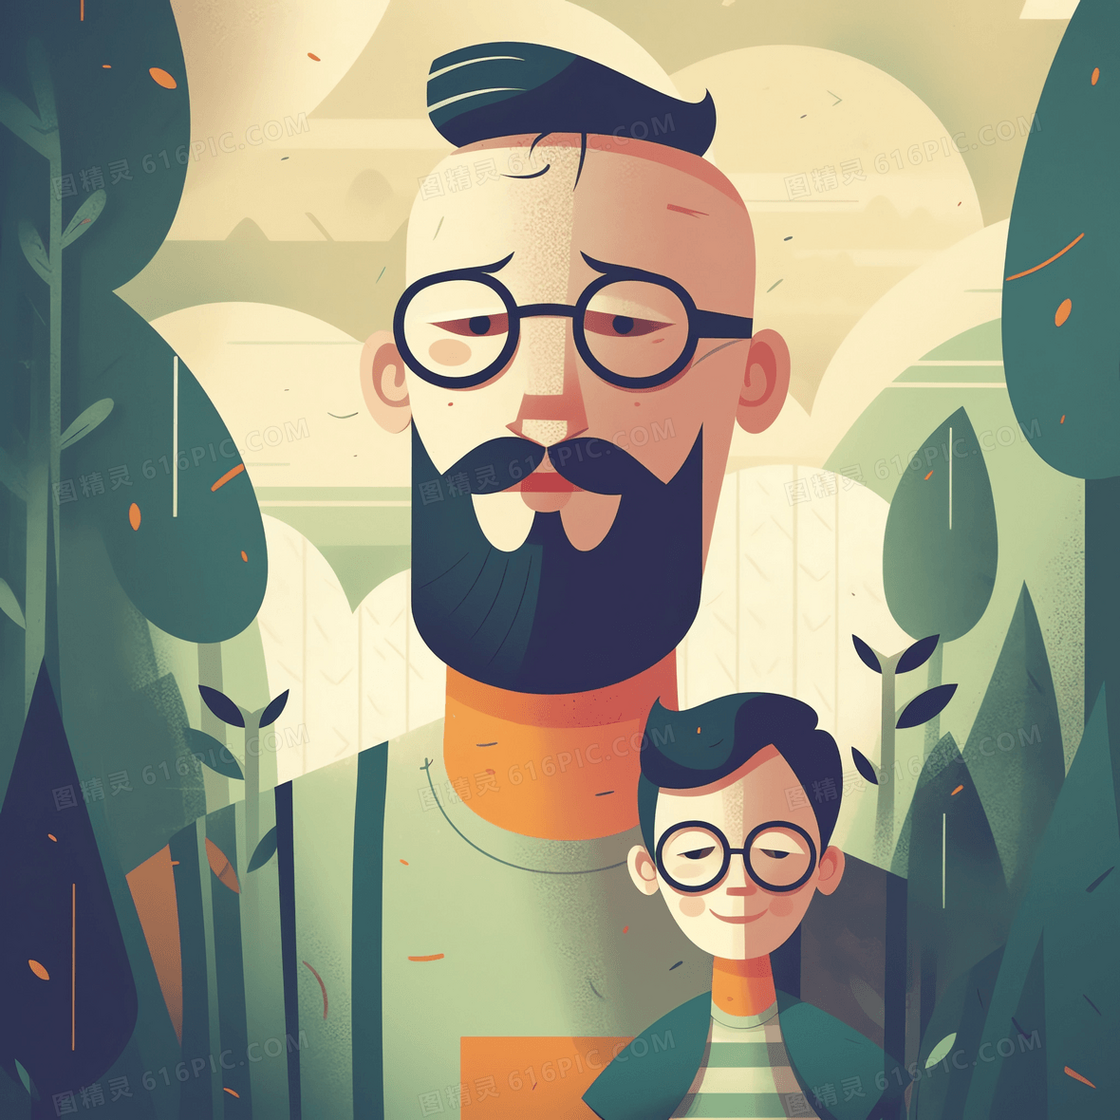 戴眼镜的爸爸和孩子在绿林中